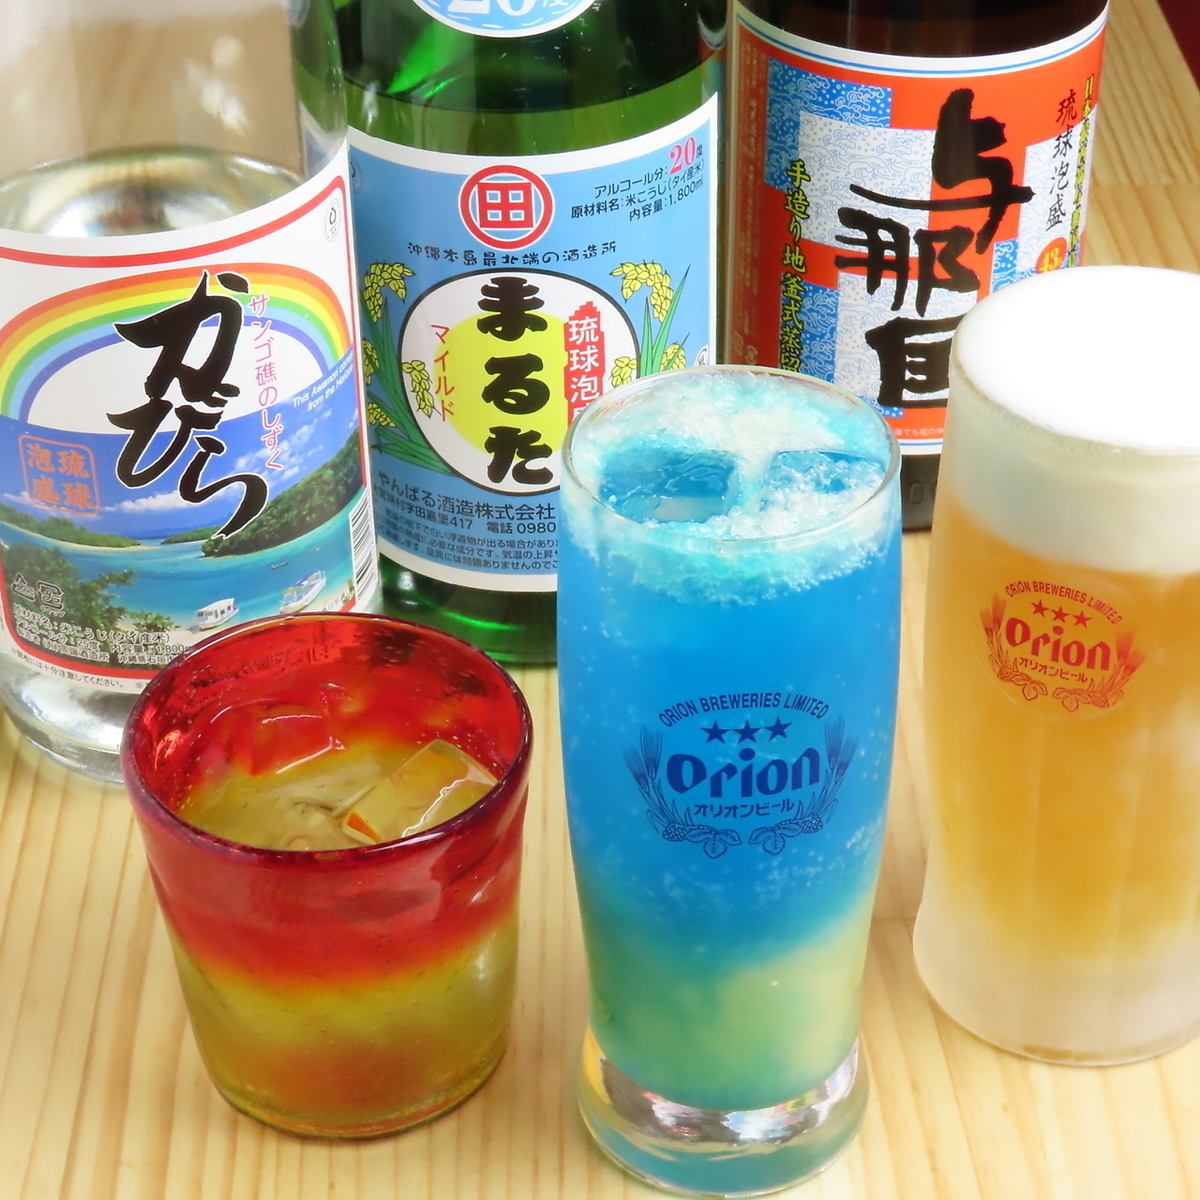 冲绳有很多标准的酒类！还有石垣岛的果酒、泡盛酒等！